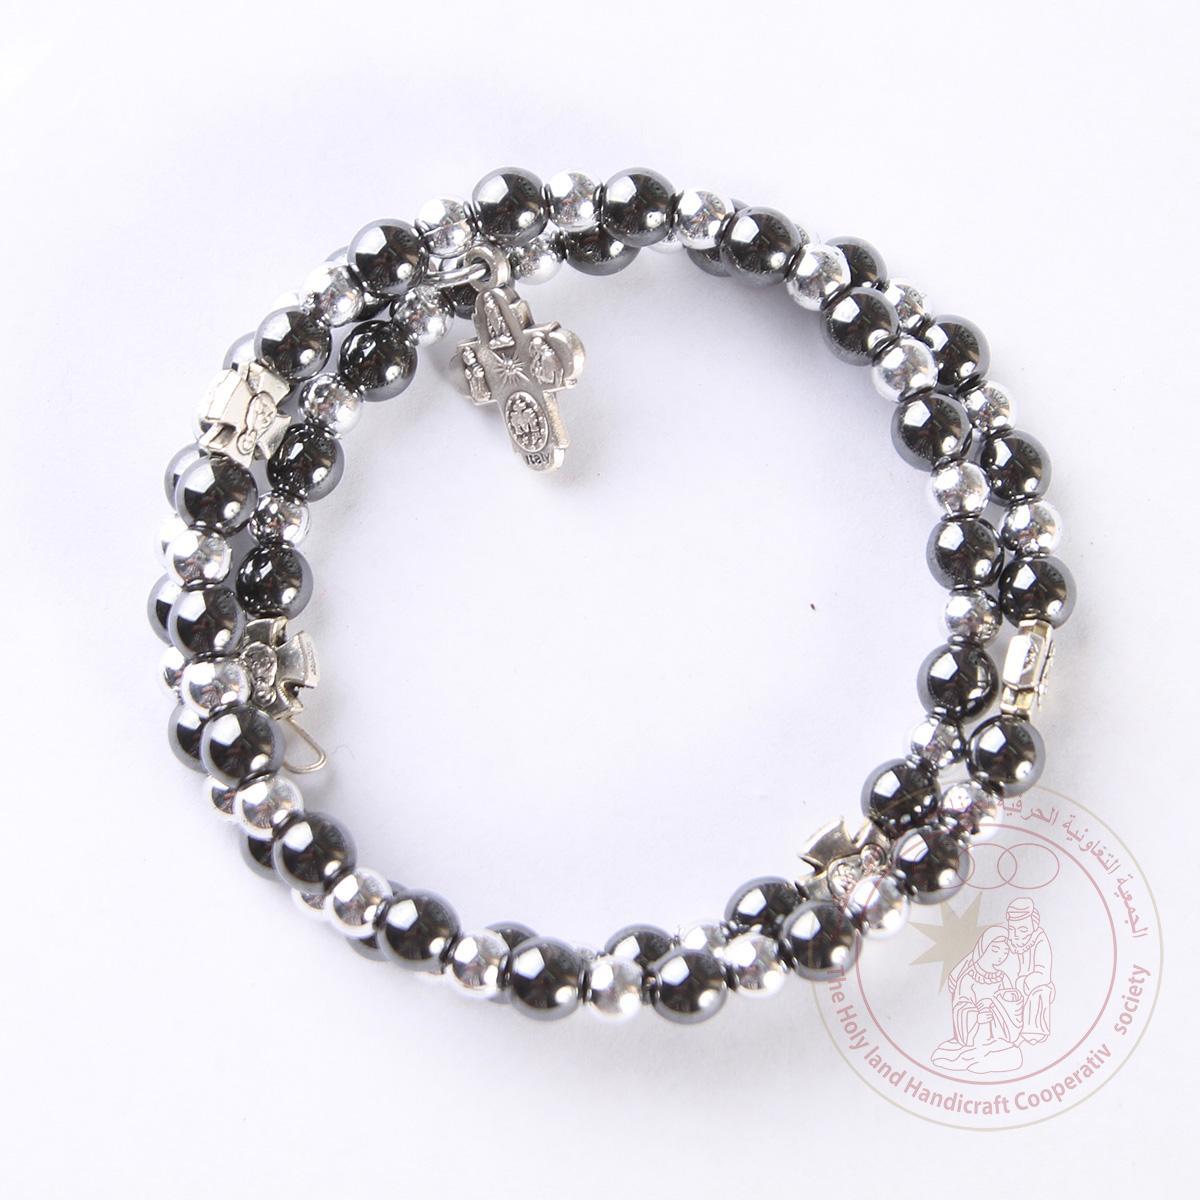 Sterling double wrap beads bracelet w/ cross